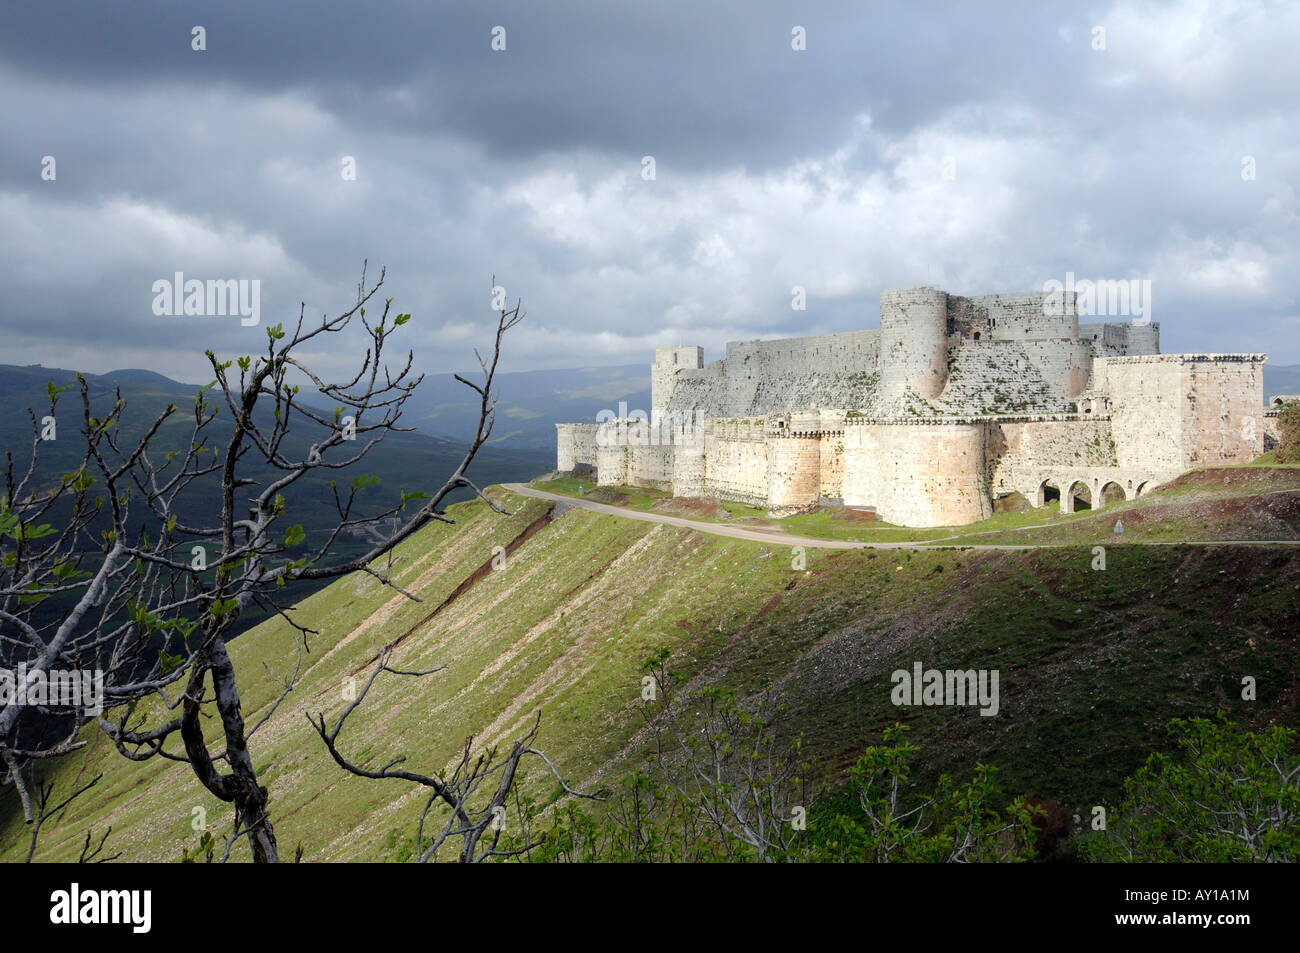 Ce château médiéval utilisé par les croisés, le "Krak des Chevaliers", est un monument historique et touristique dans la région de Hosn, Syrie Banque D'Images